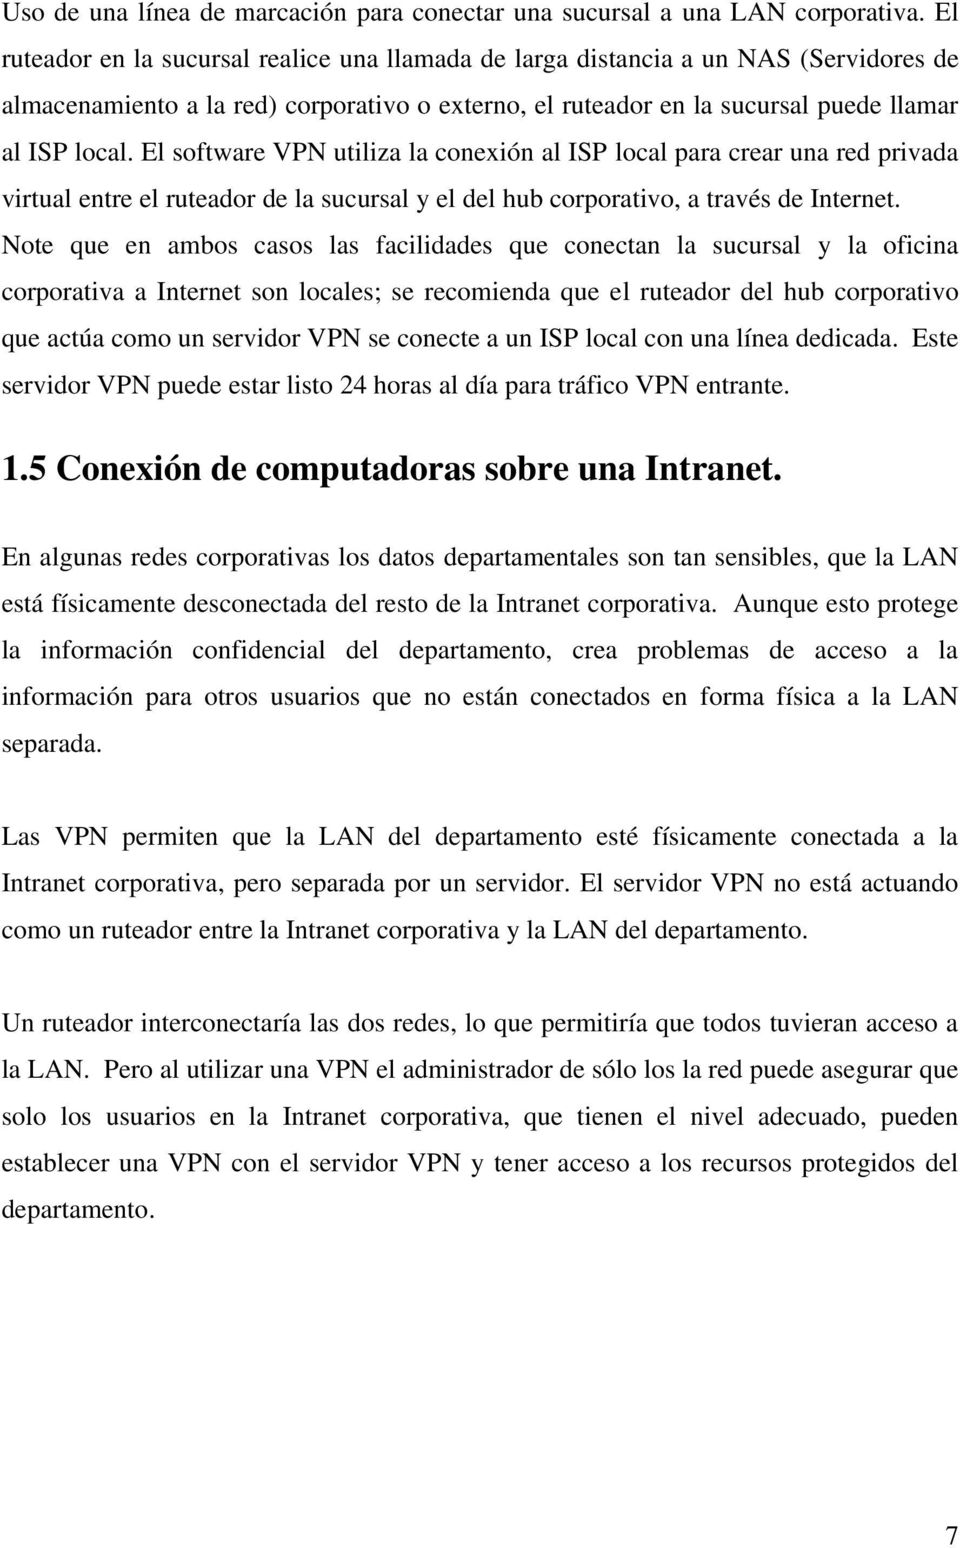 El software VPN utiliza la conexión al ISP local para crear una red privada virtual entre el ruteador de la sucursal y el del hub corporativo, a través de Internet.